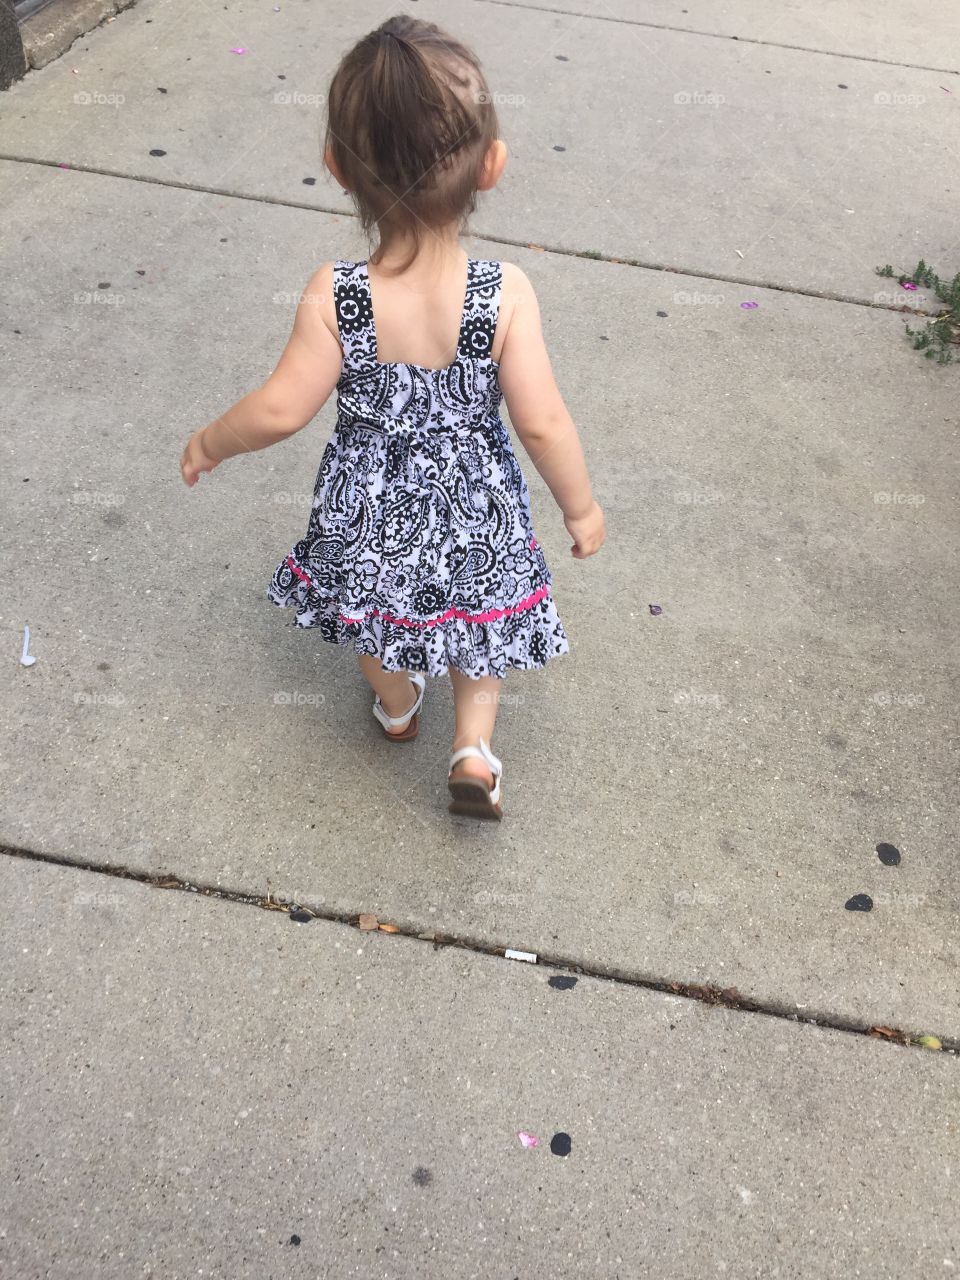 Walking away toddler